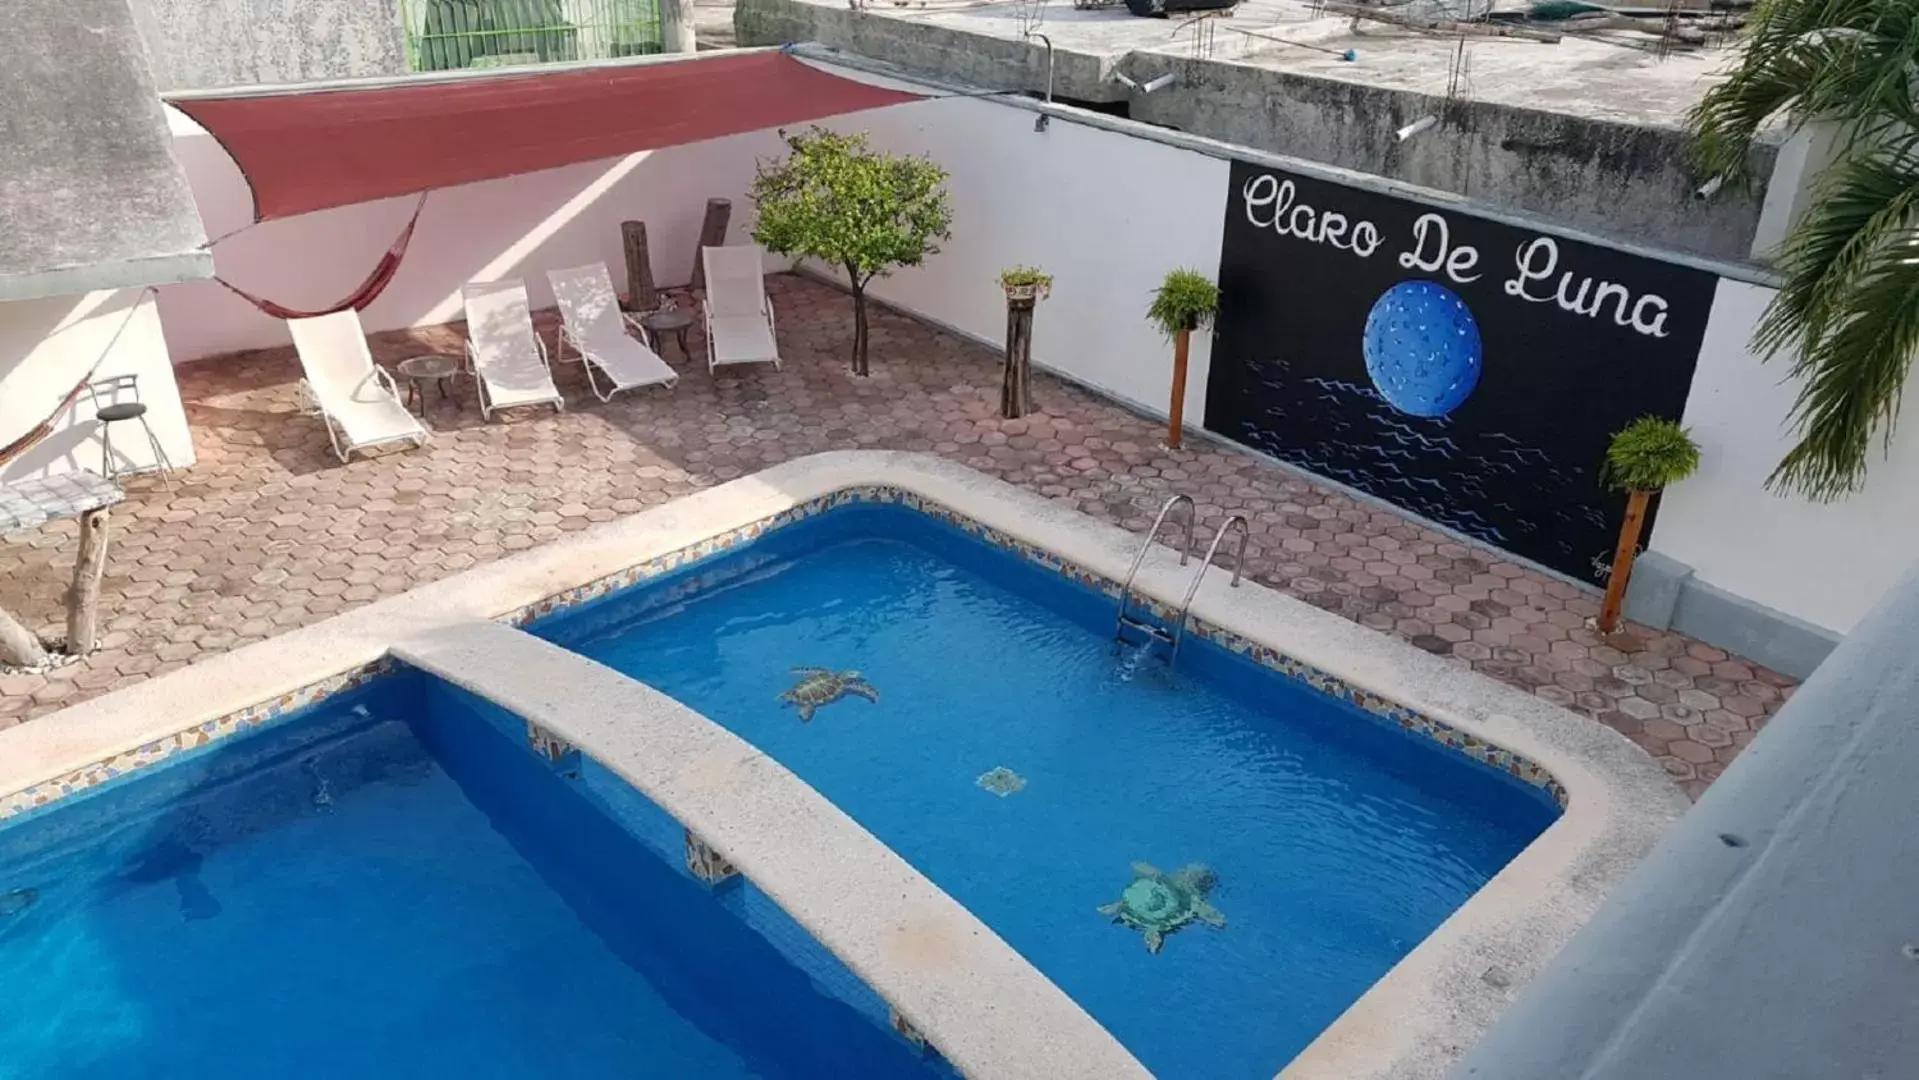 Swimming pool, Pool View in Claro de Luna